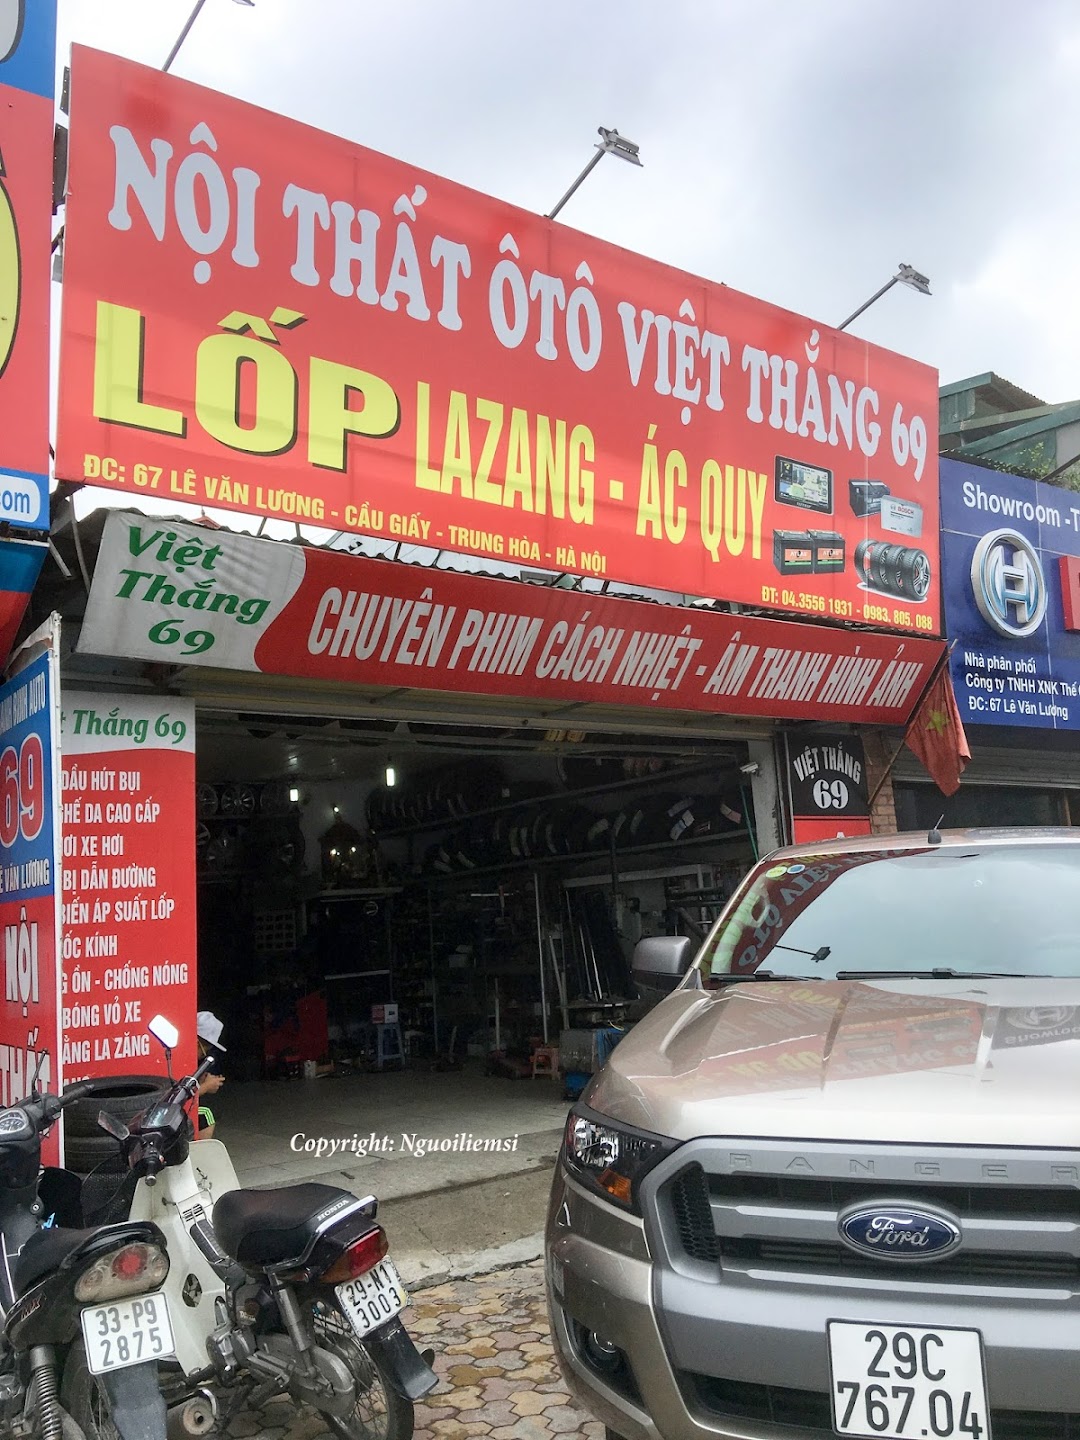 Lốp ô tô Việt Thắng II